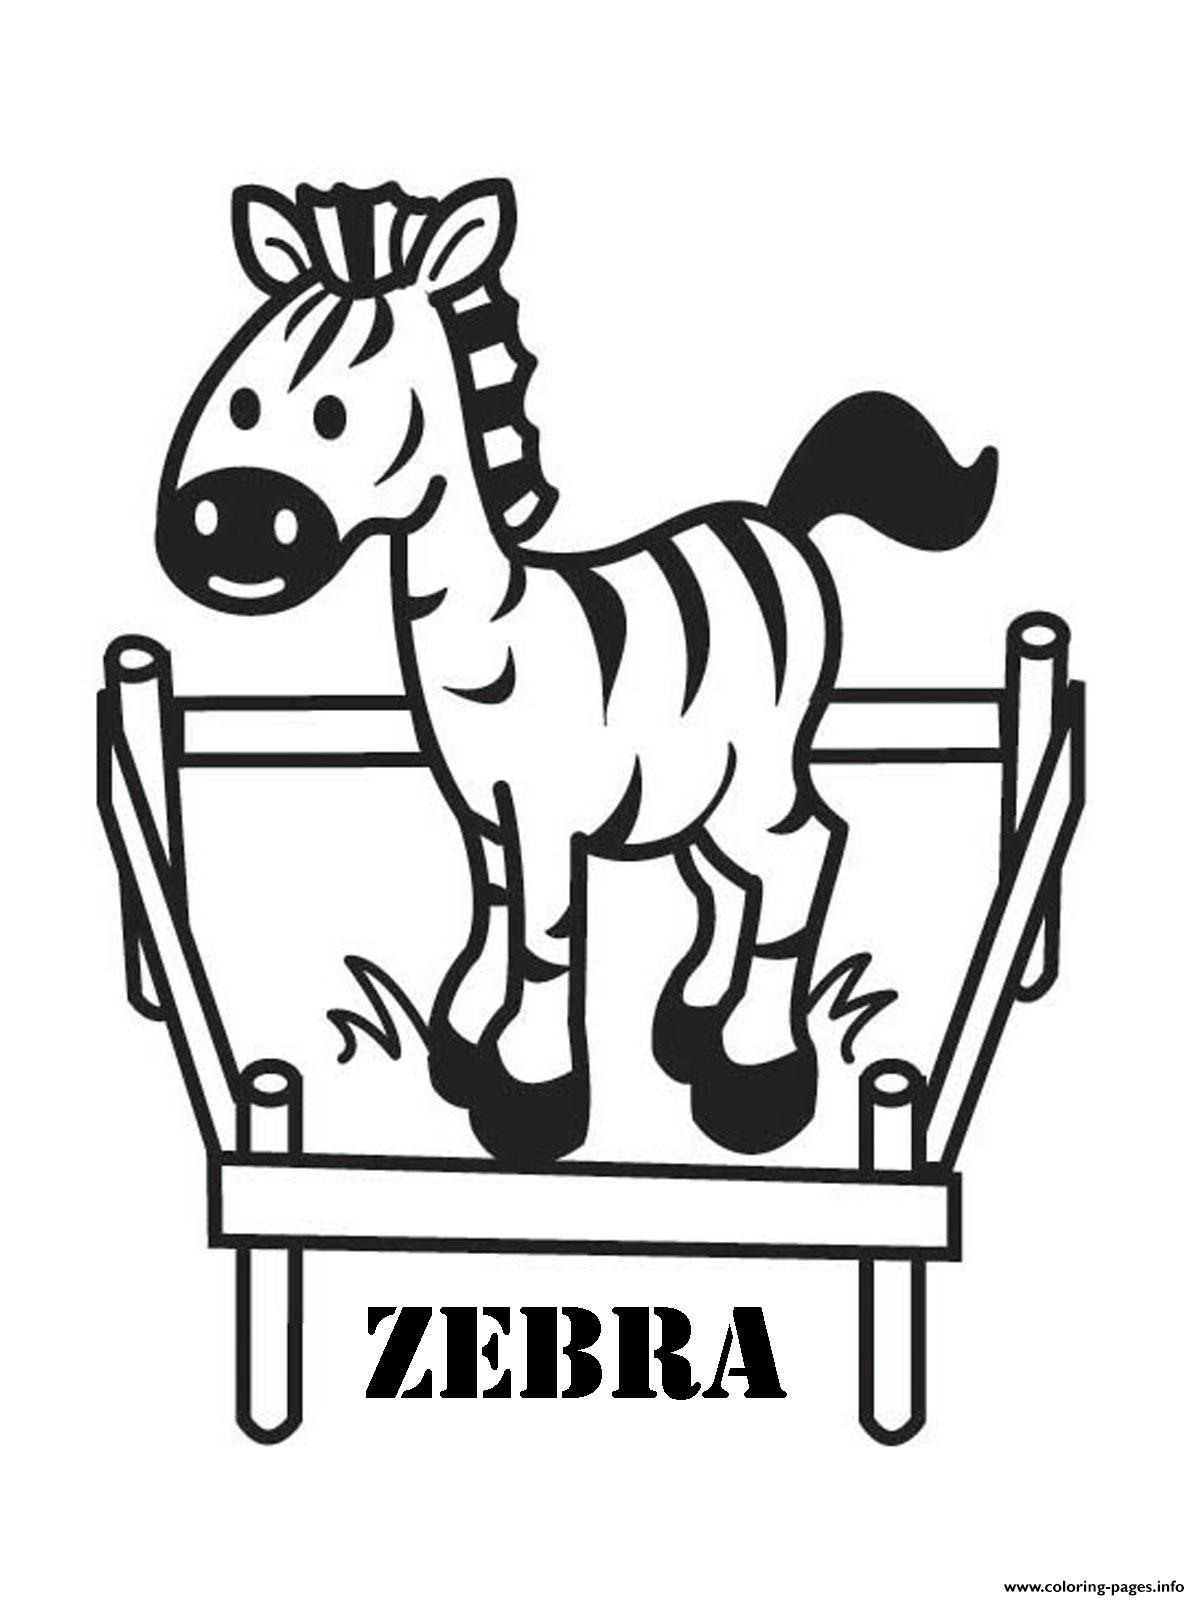 Cute Preschool S Zebra68b4 coloring